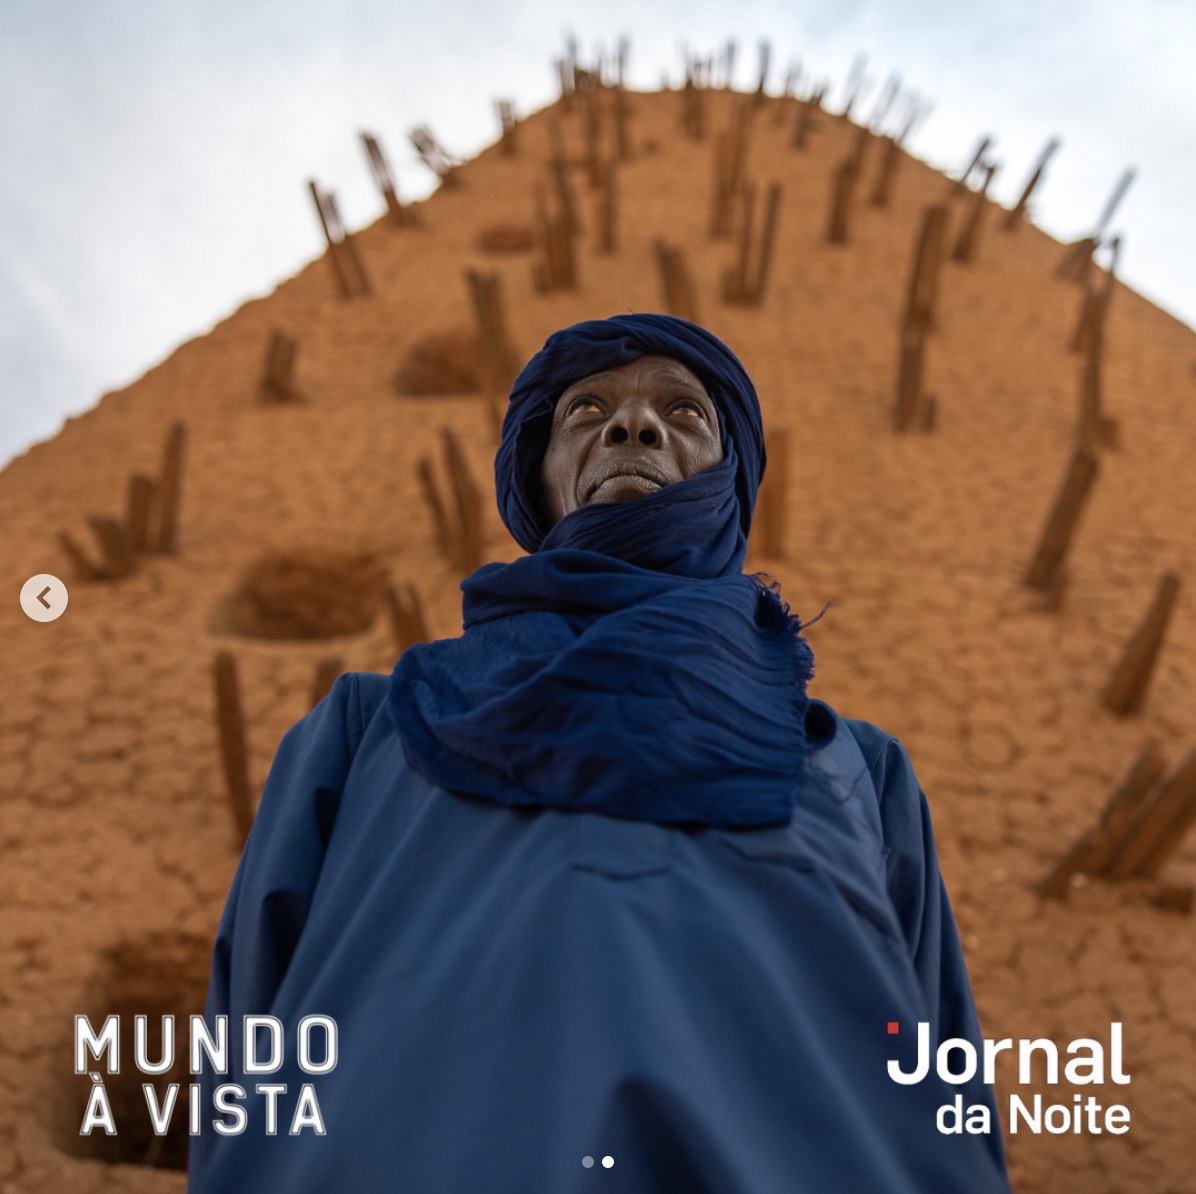 Mundo-a-vista-joel-santos-jornal-da-noite-sic-noticias-niger-tuareg.jpg